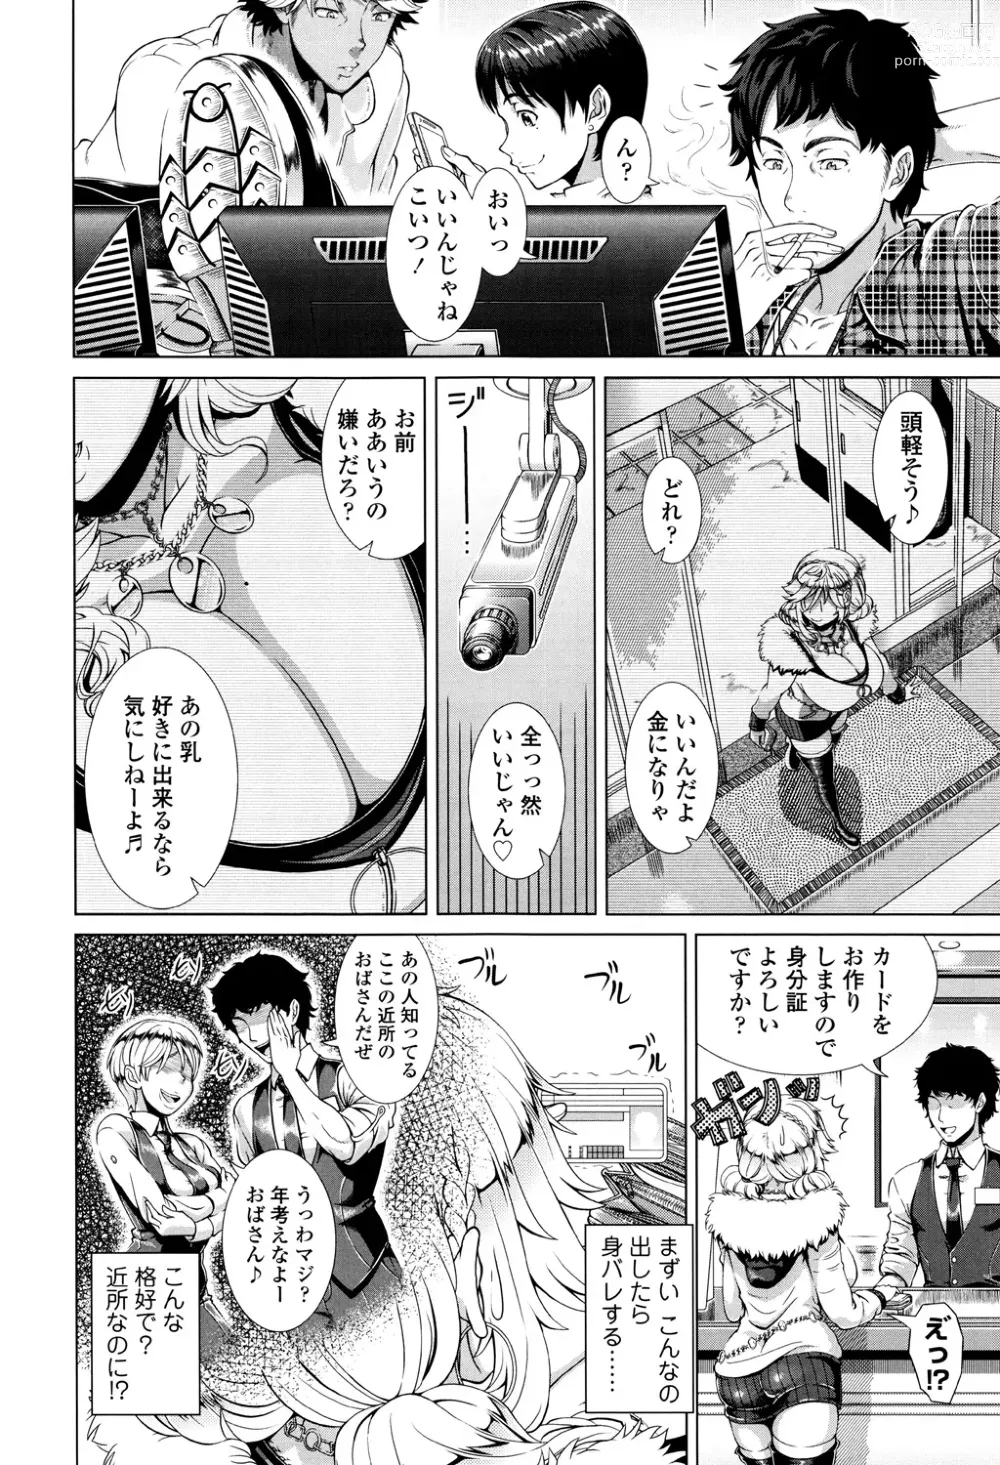 Page 6 of manga Hitozuma Life - Married Woman Life